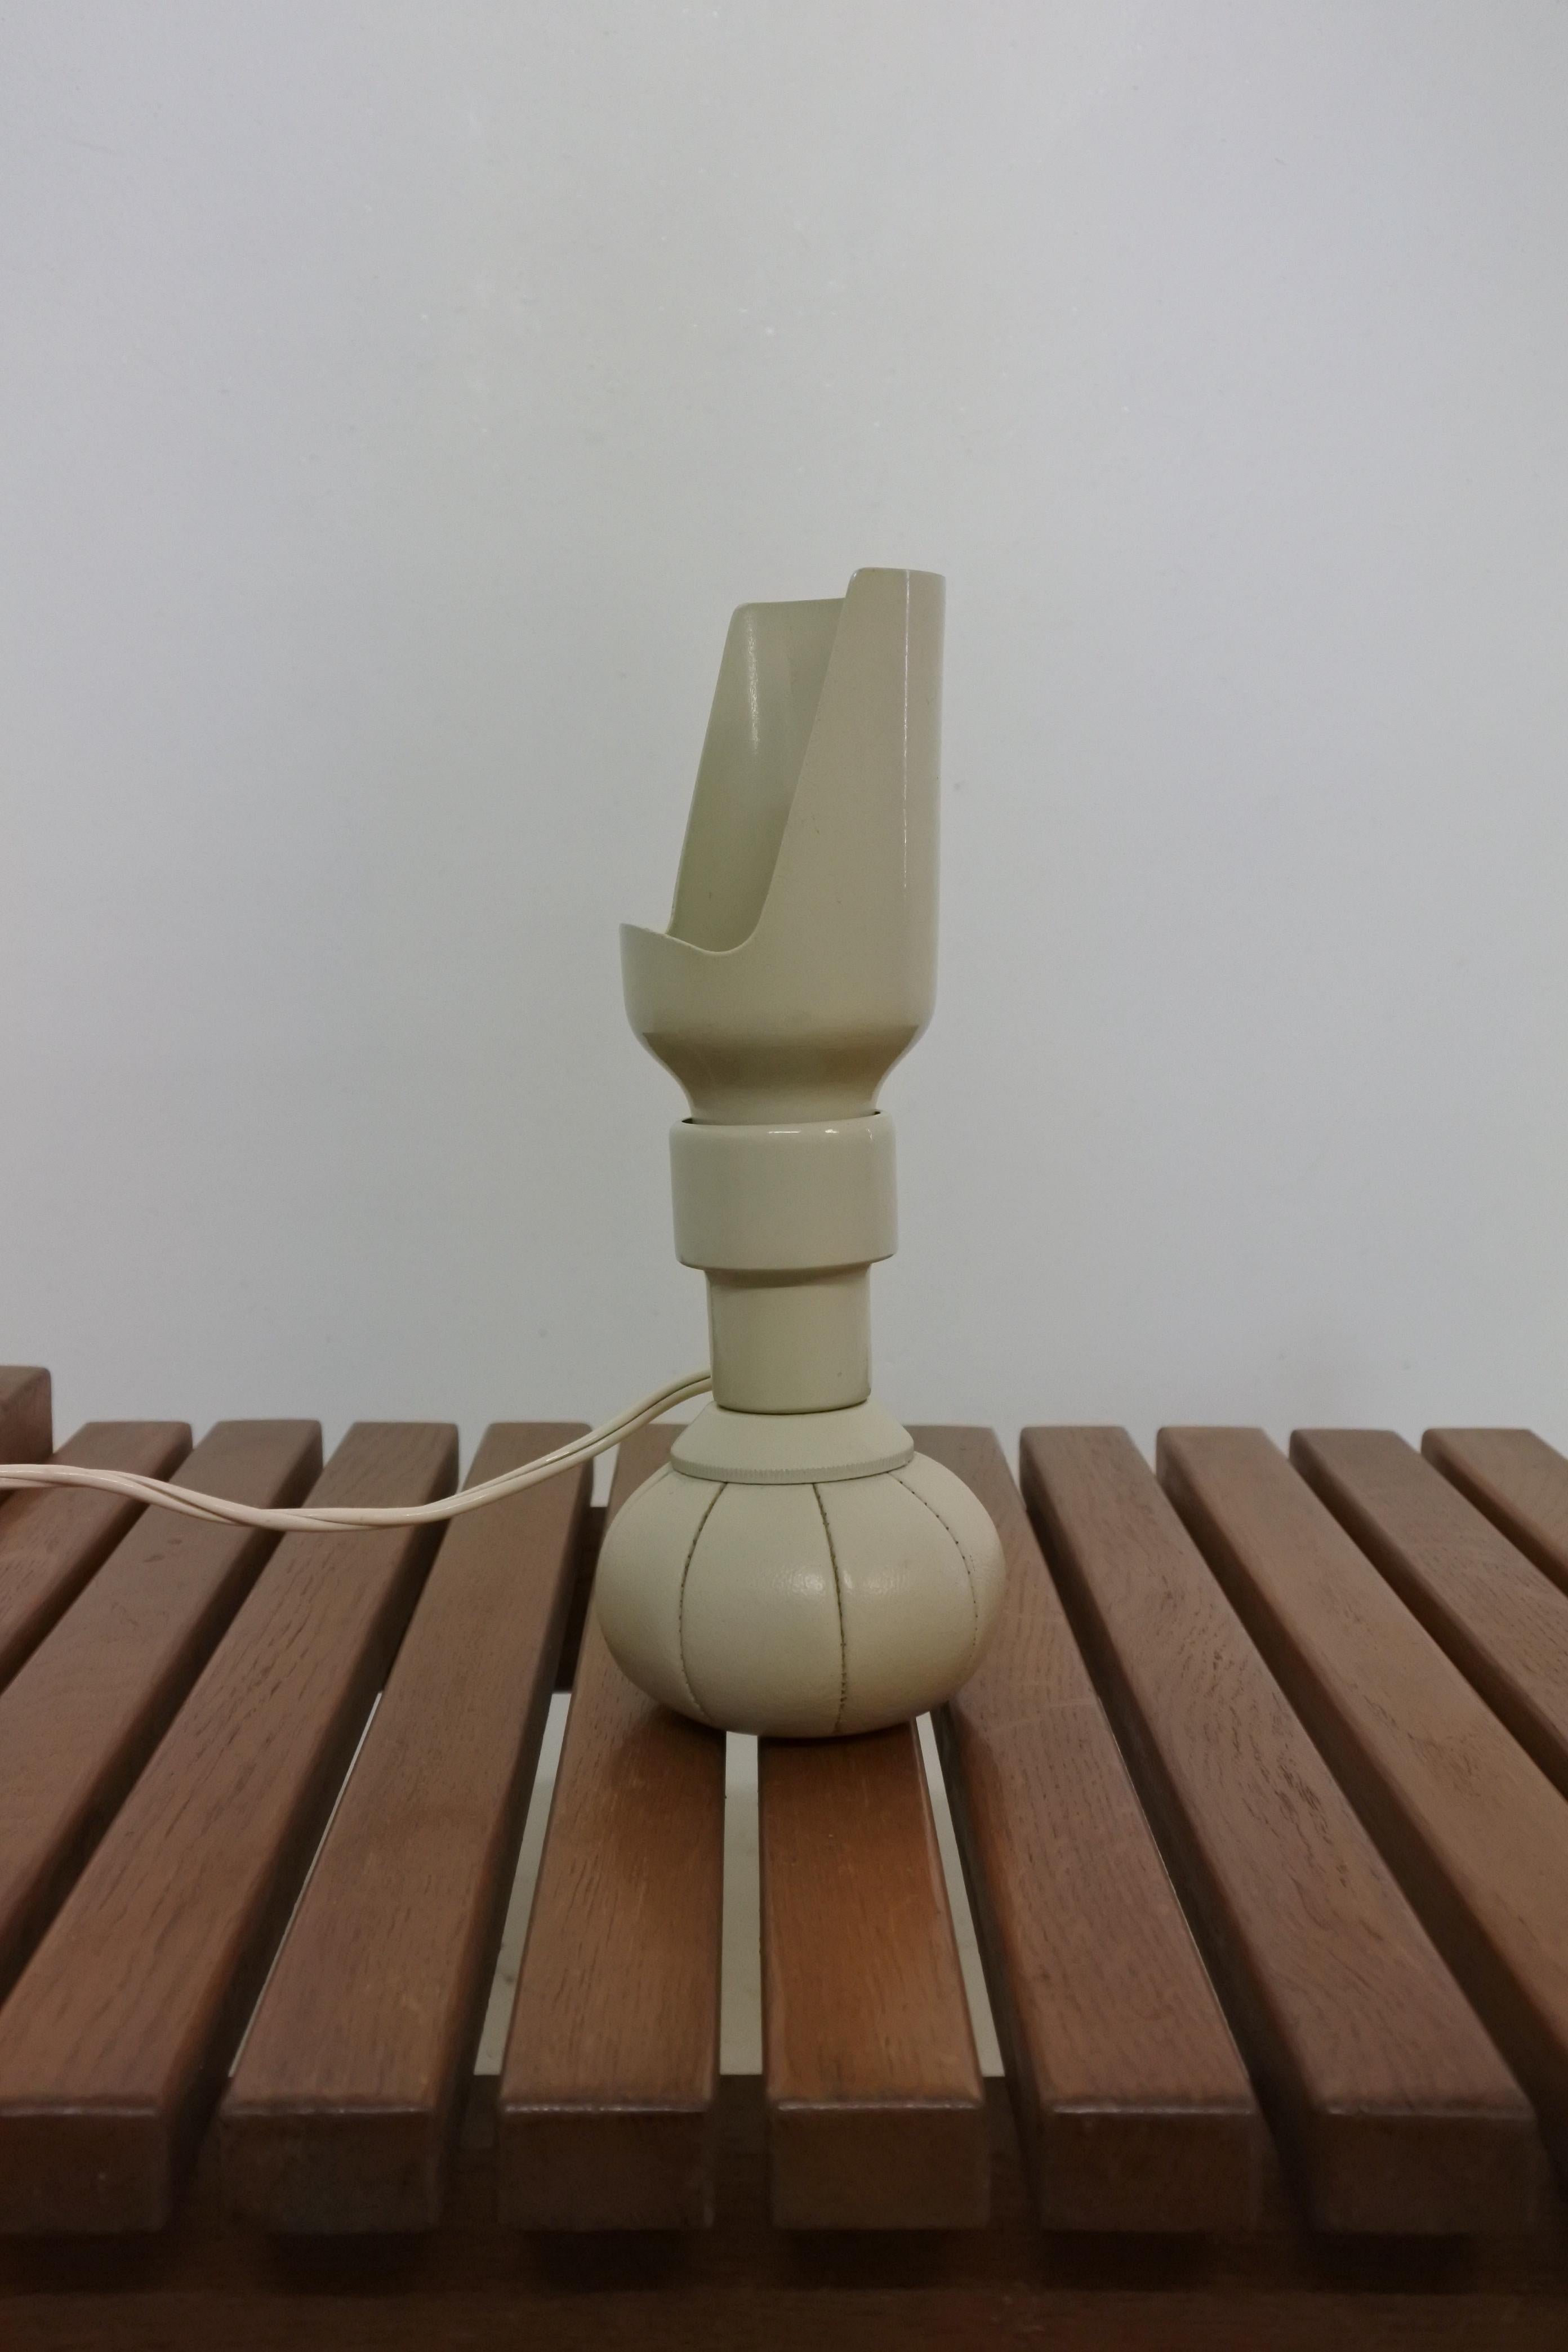 Lampe de table ancienne de Gino Sarfatti & Arteluce.
Modèle 600/p conçu en 1966, fabriqué en Italie.
Réflecteur et douille en aluminium laqué blanc, base en cuir blanc remplie de chevrotine, réglable dans toutes les directions.

Remarquable